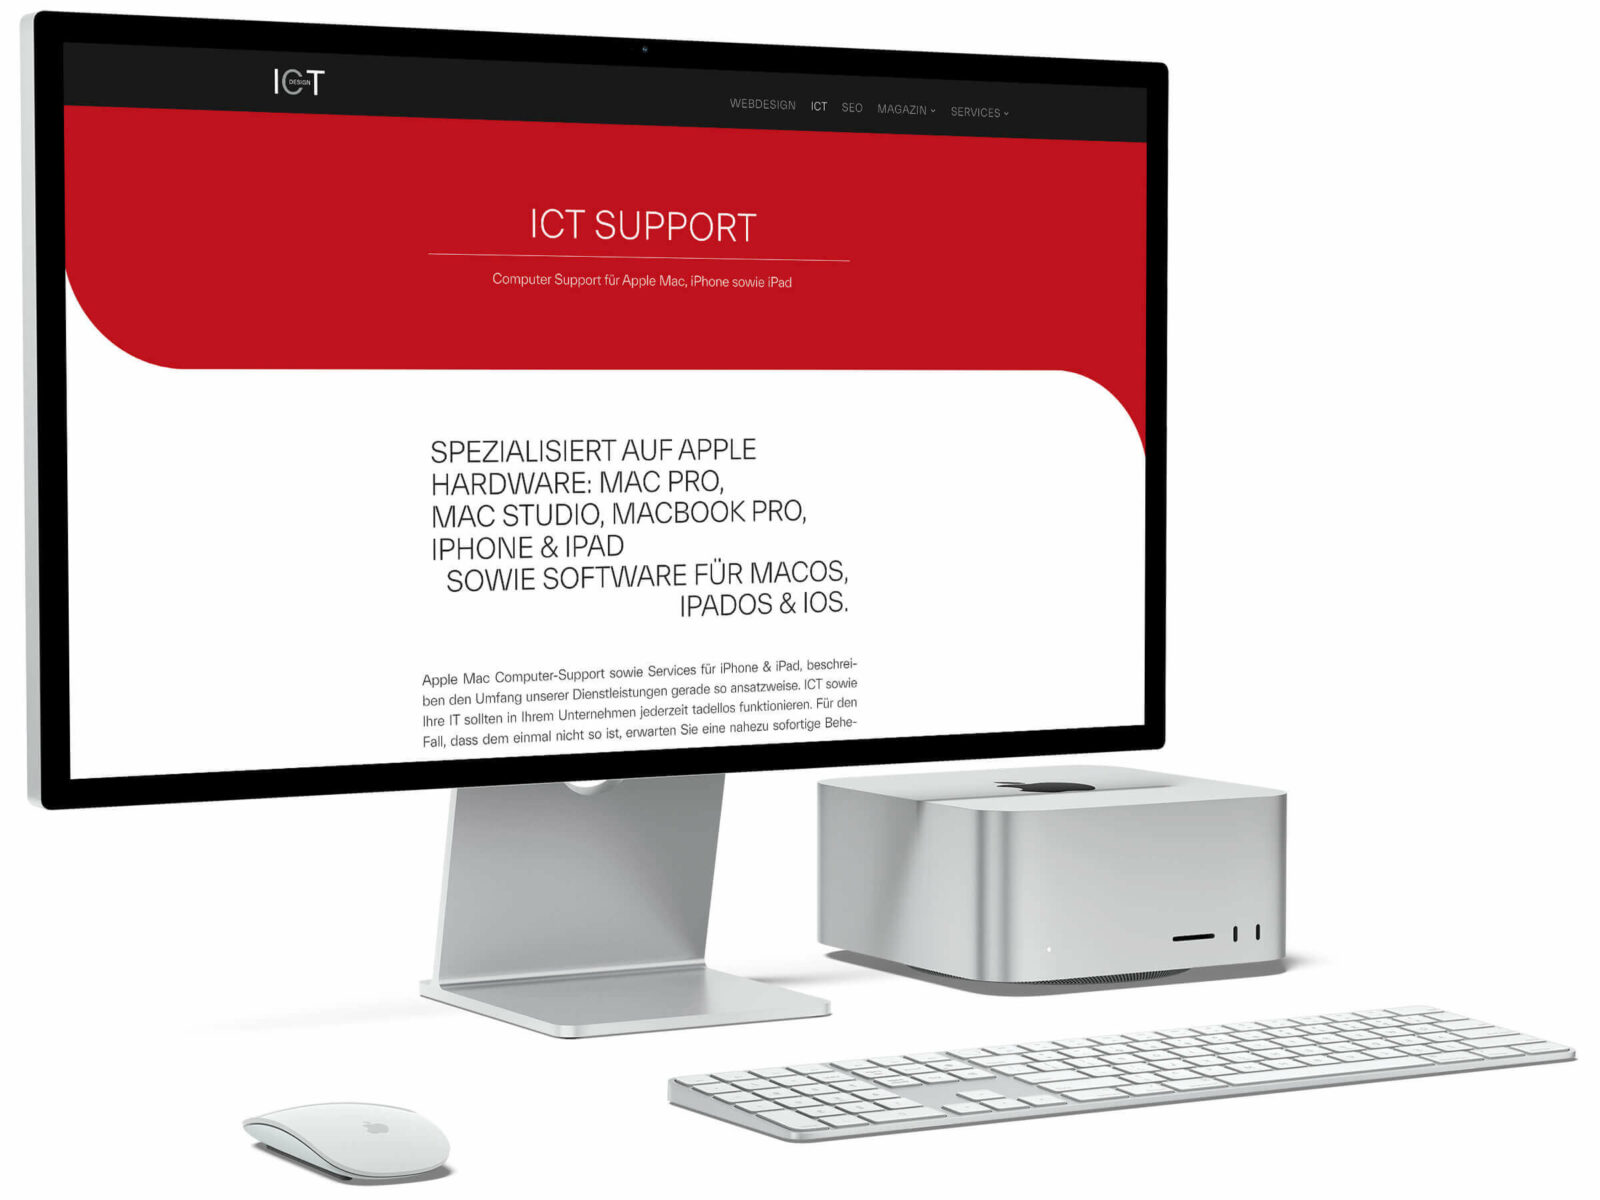 Apple Mac Support ⭐ WebDesign Agentur Plauen ⭐ ICT Business Dienstleistungen & SEO Services ⭐ Wir lieben was wir tun! Seit über 25 Jahren!